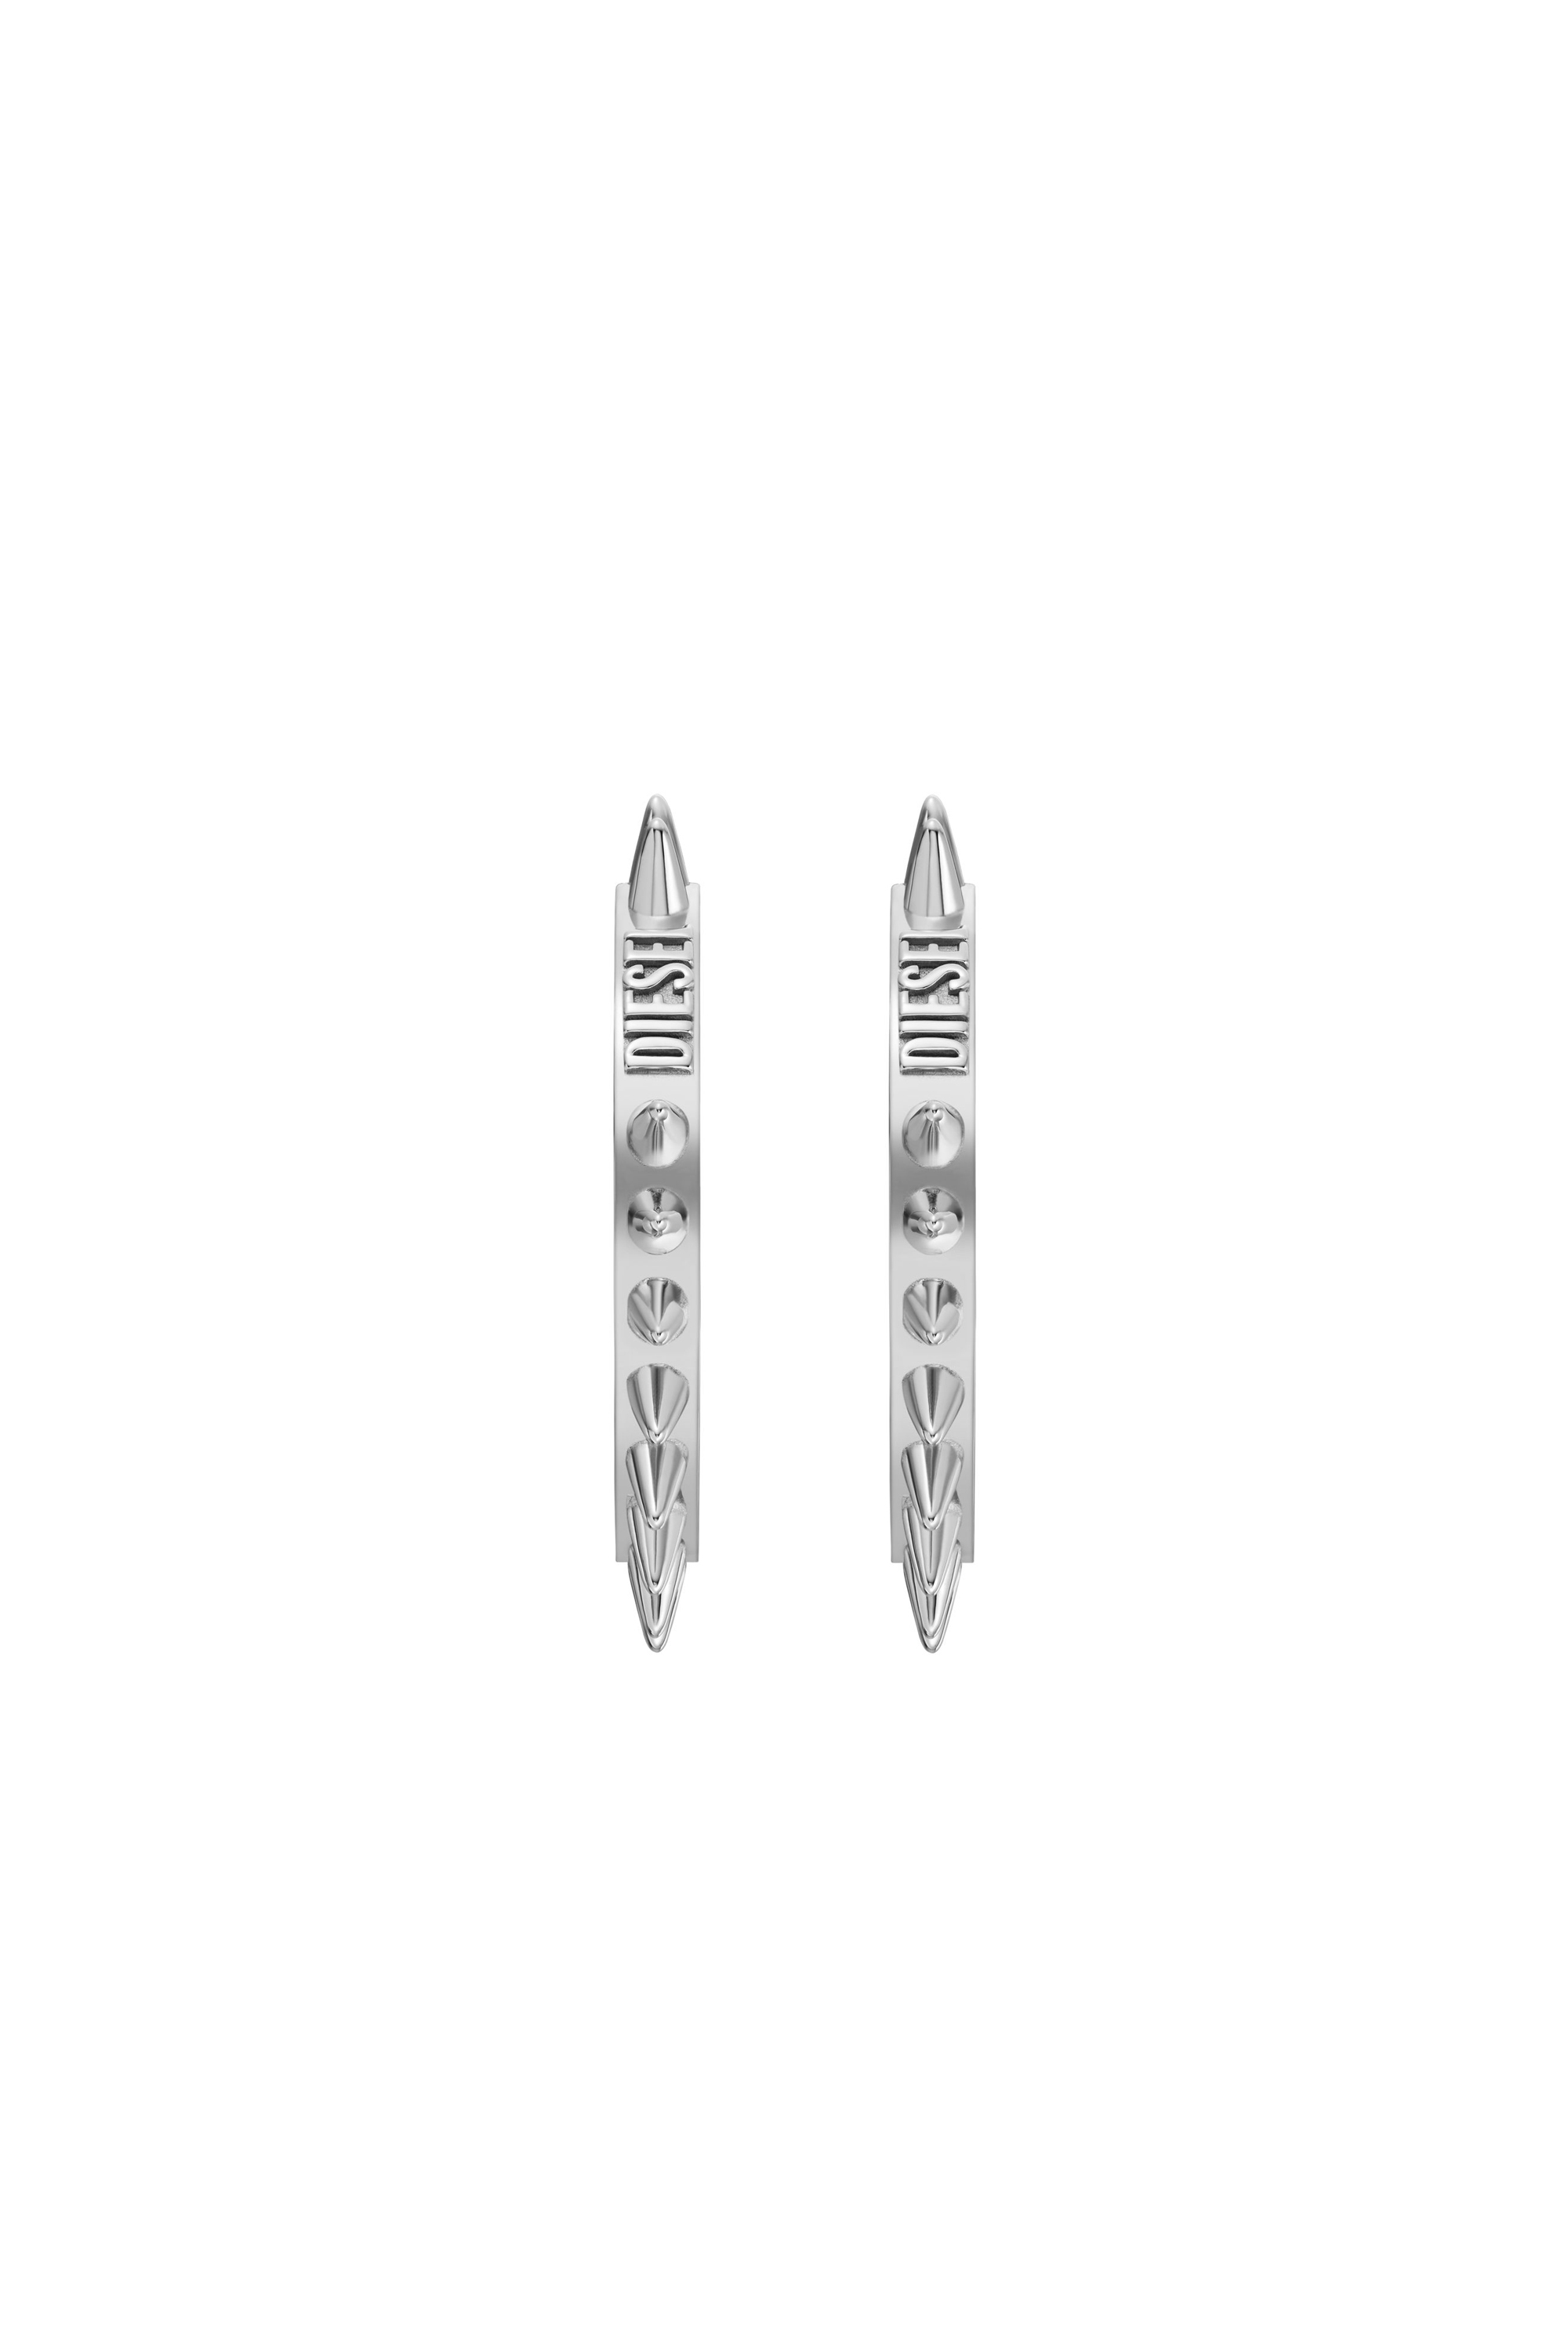 Diesel - DX1451, Unisex Stainless Steel Hoop Earrings in Silver - Image 2